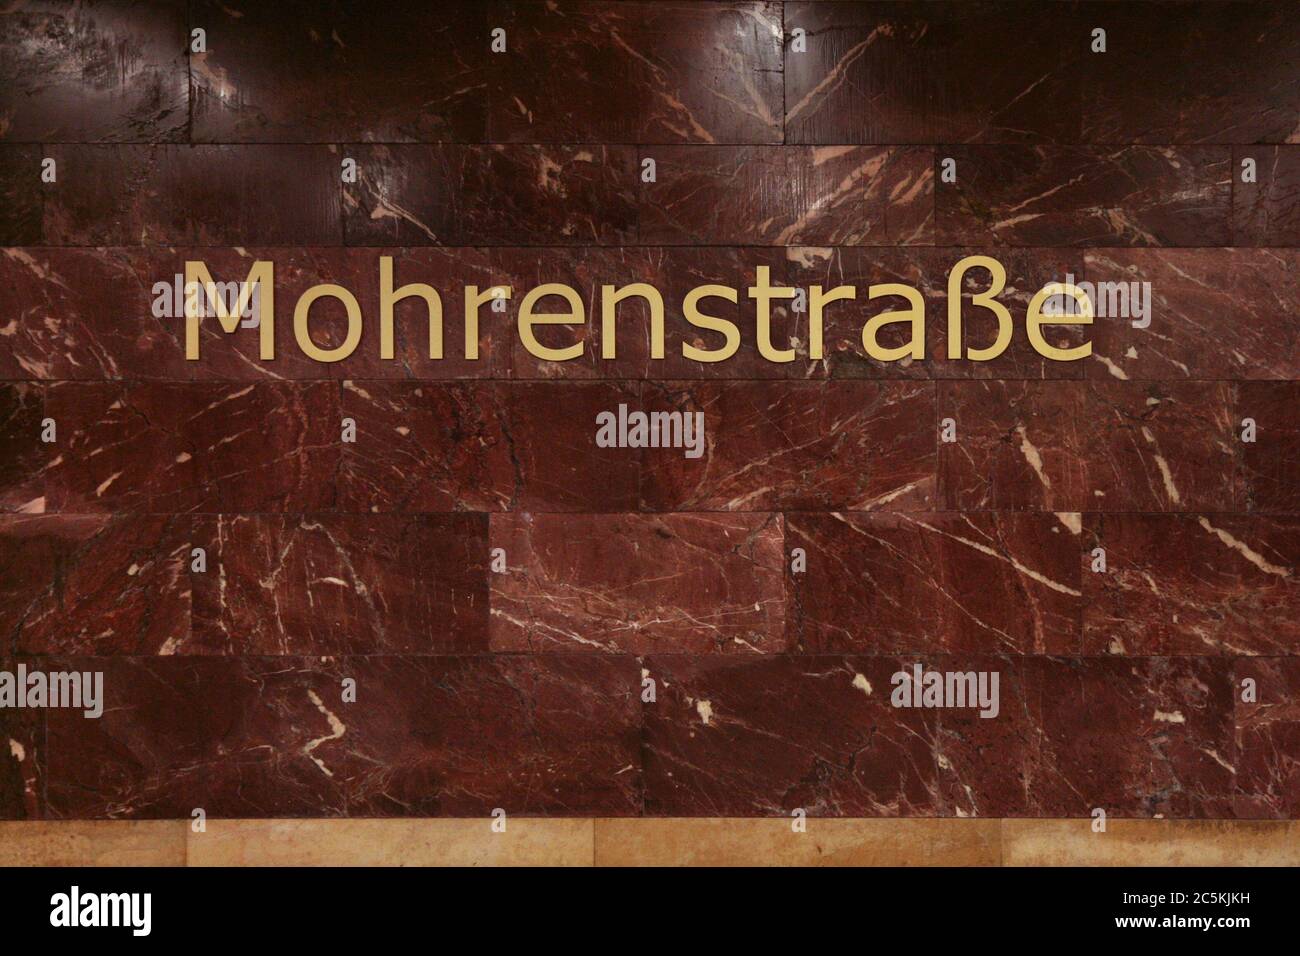 U-Bahn-Station Mohrenstraße in Berlin, Deutschland. Der städtischen Legende nach wurde der rote Stein, der in den 1950er Jahren zur Umgestaltung des Bahnhofs verwendet wurde, aus den Ruinen der Reichskanzlei entnommen, die in der Nähe des Bahnhofs gestanden hatten. Stockfoto